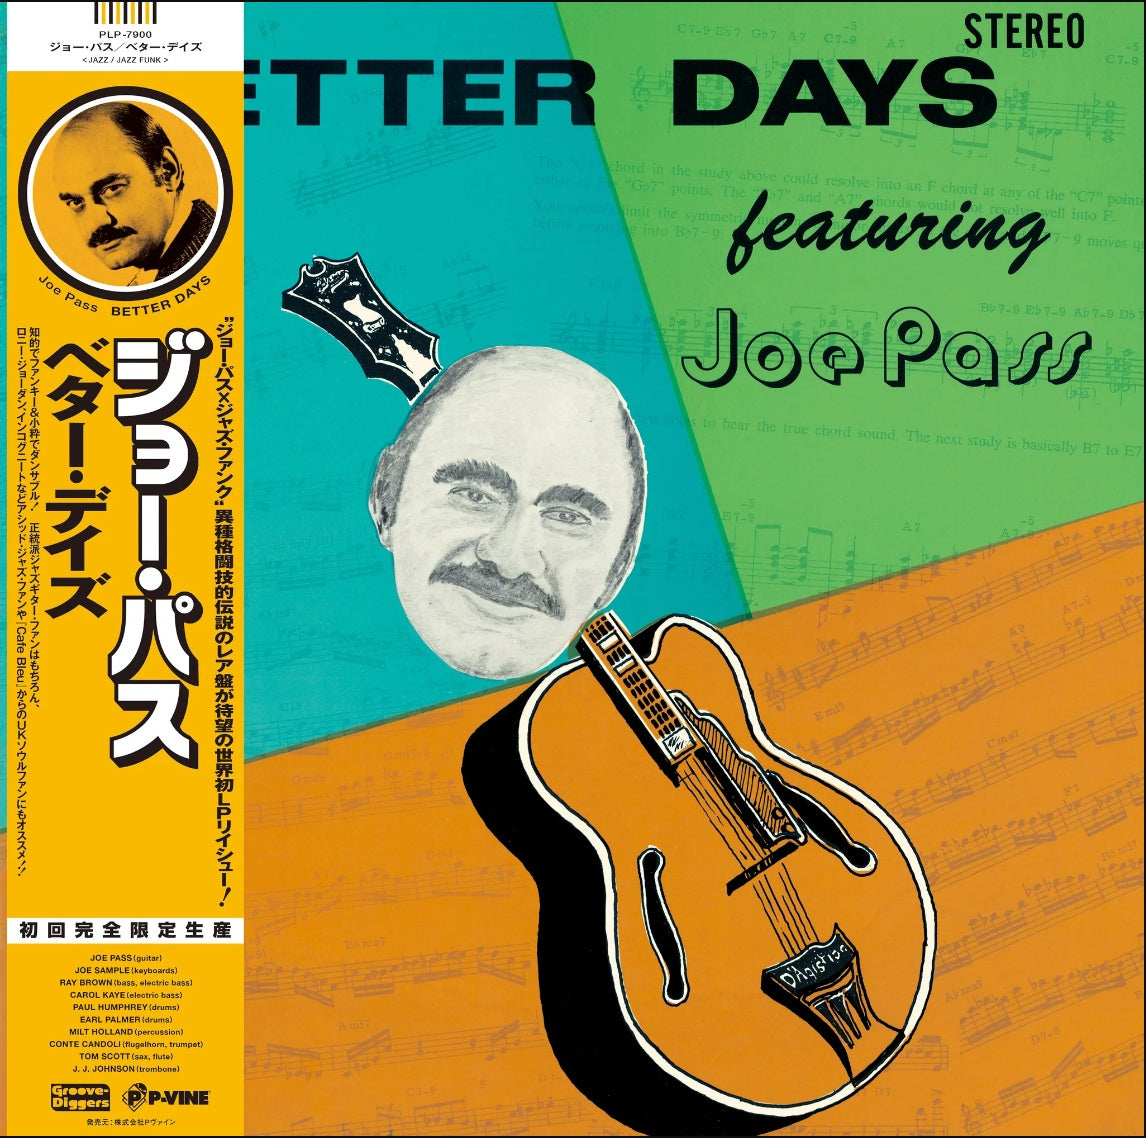 Joe Pass – Better Days